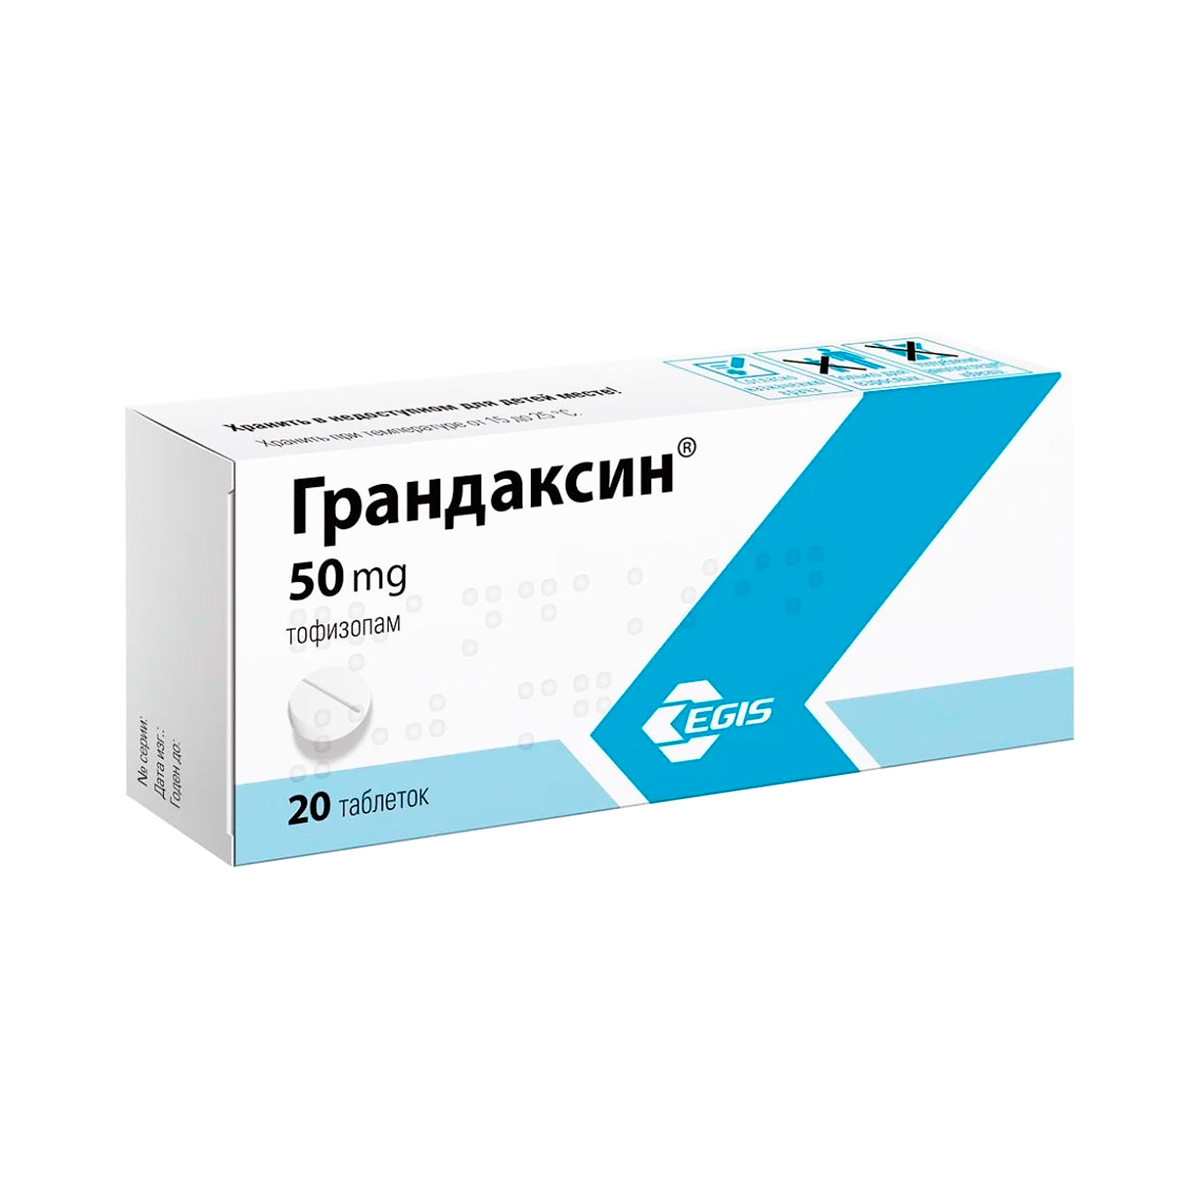 Грандаксин 50 мг таблетки 20 шт